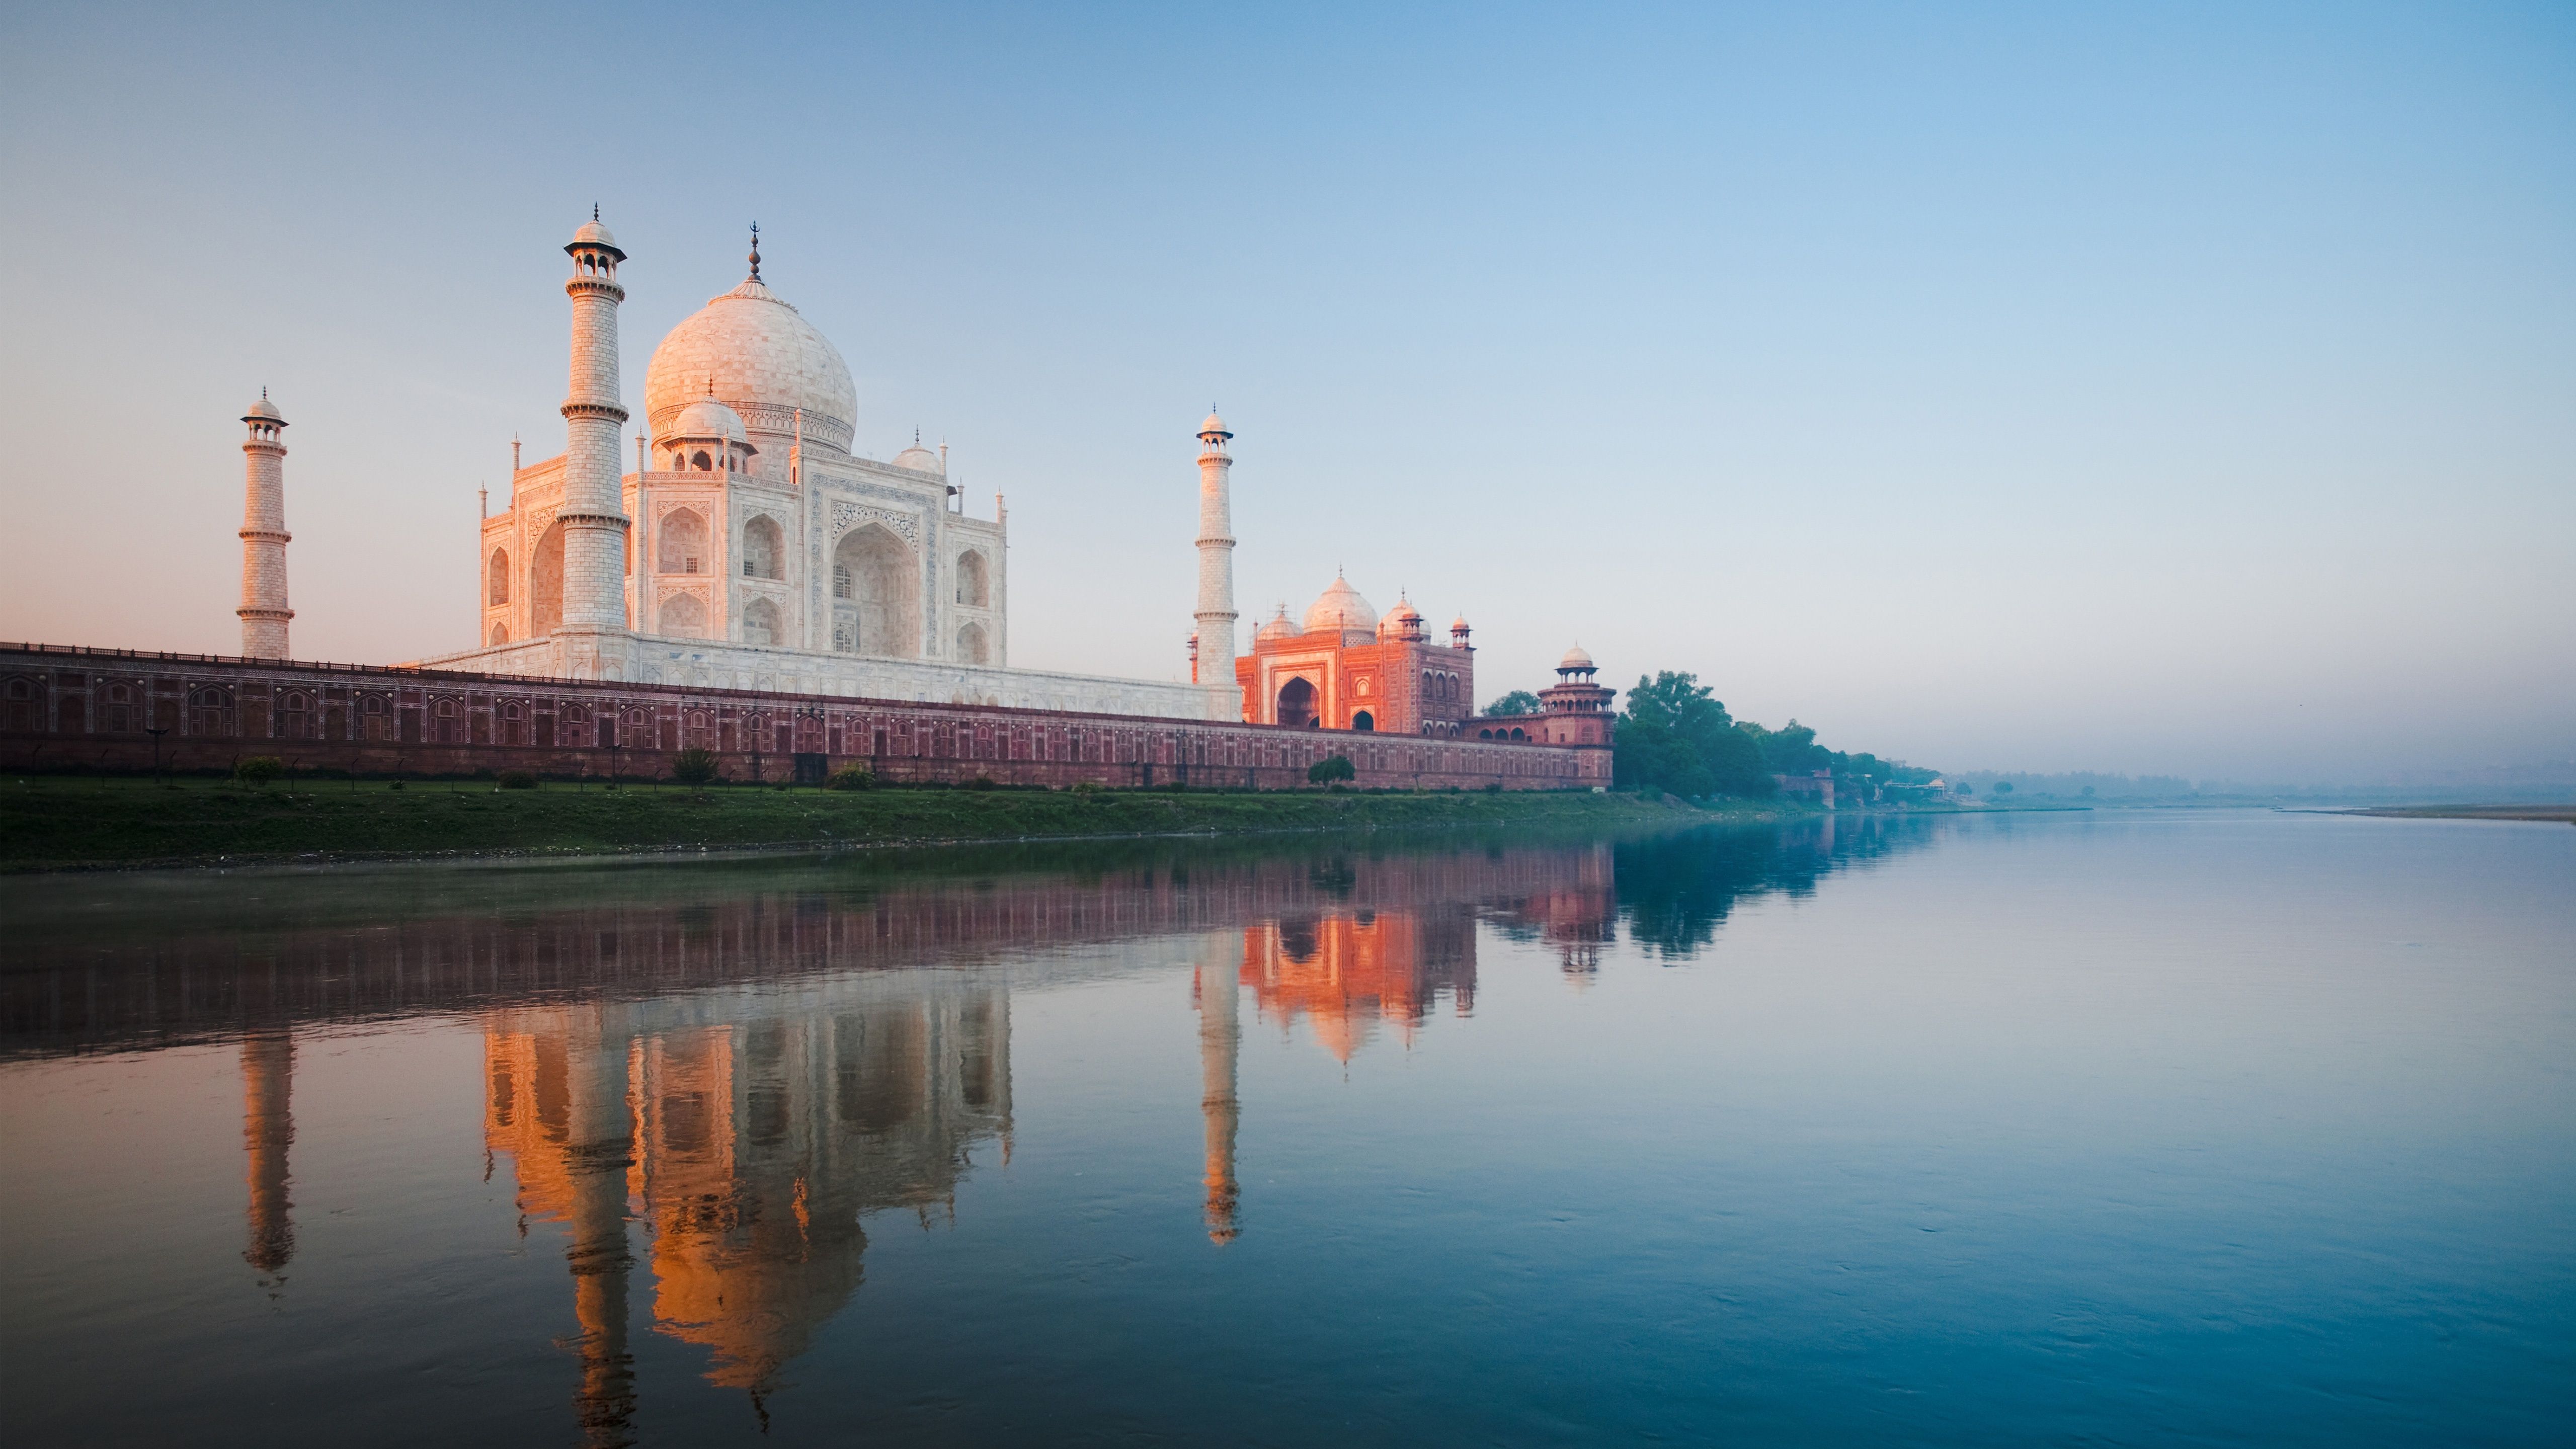 Taj Mahal HD 4K 5K Wallpaper in jpg format for free download